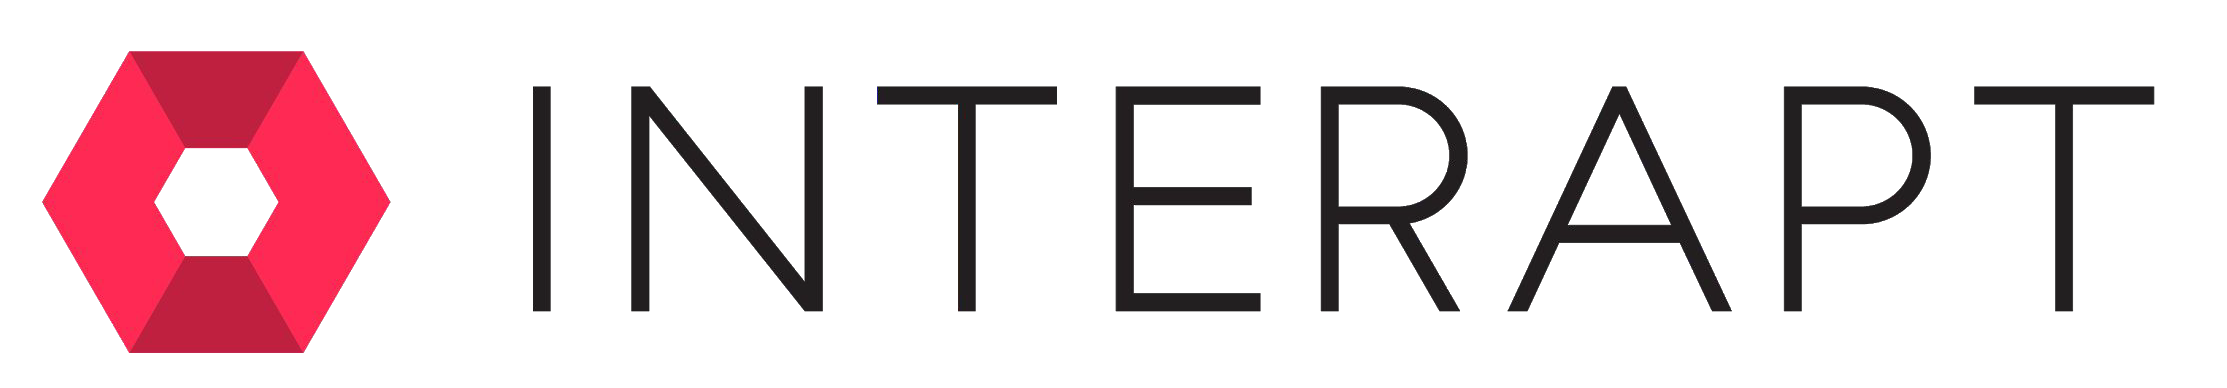 Interapt Logo